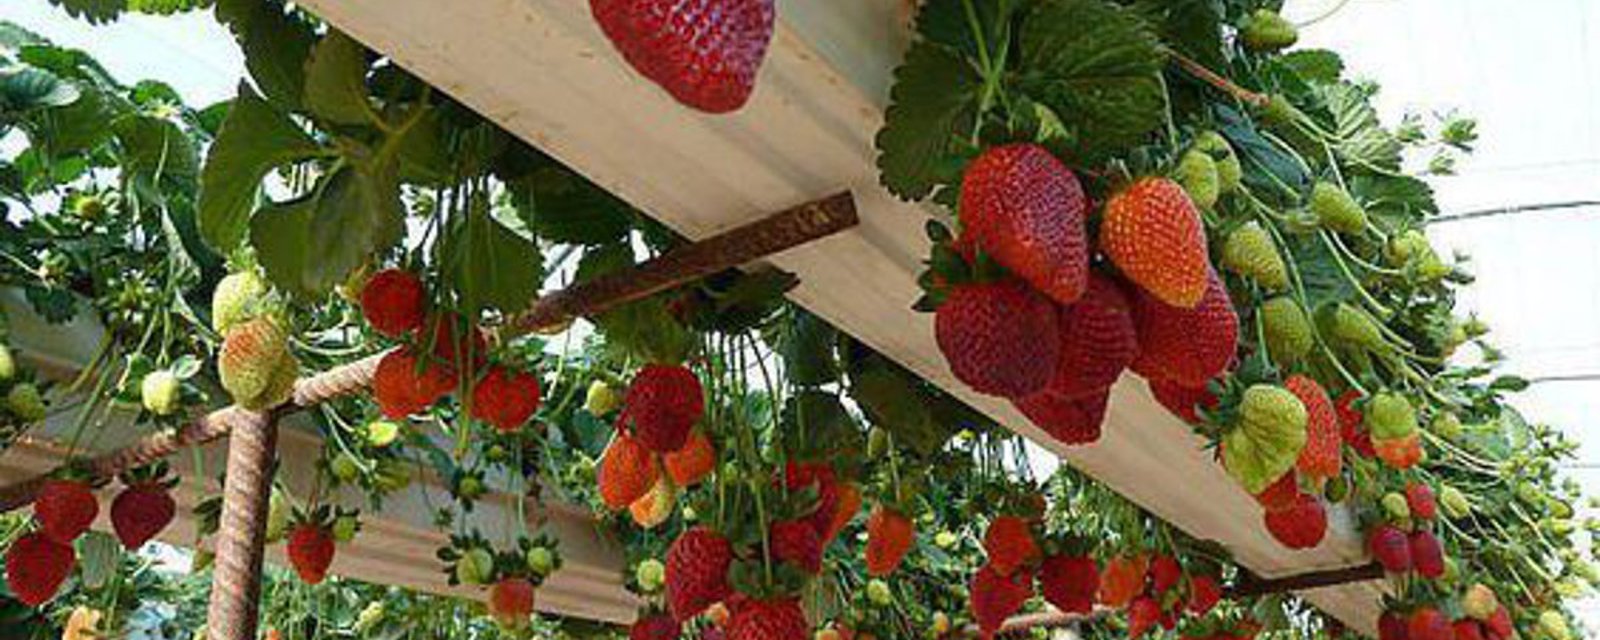 9 incroyables façons de faire pousser les fraises!! À la verticale, en hauteur, en pot, etc...! 